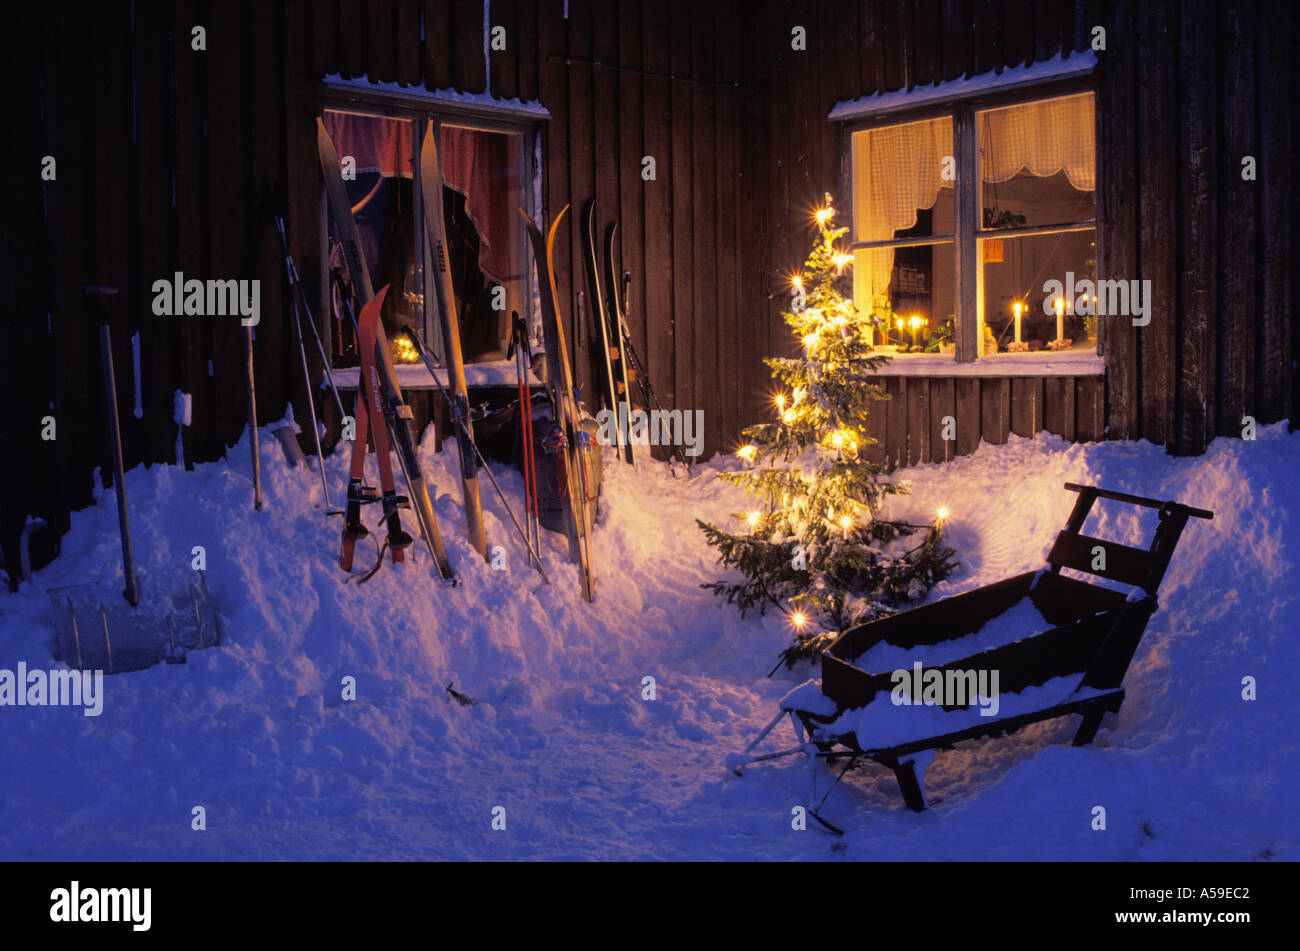 Accueil en Laponie suédoise au-dessus du cercle arctique avec des skis, une luge, pelle et l'arbre de Noël Banque D'Images